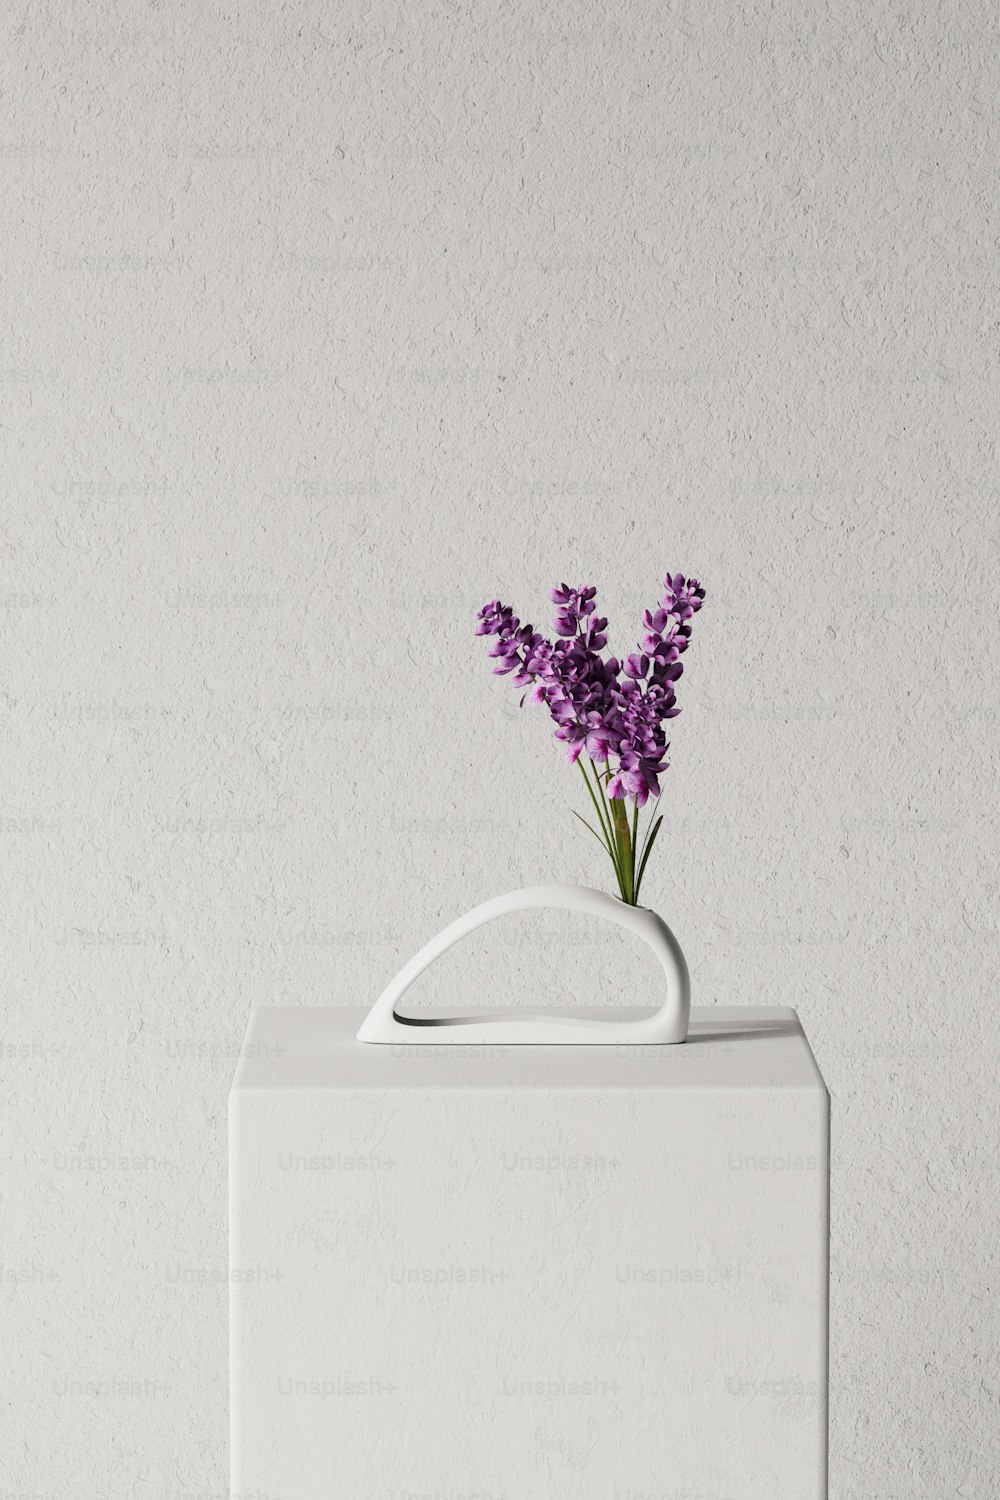 un jarrón blanco con flores púrpuras en él